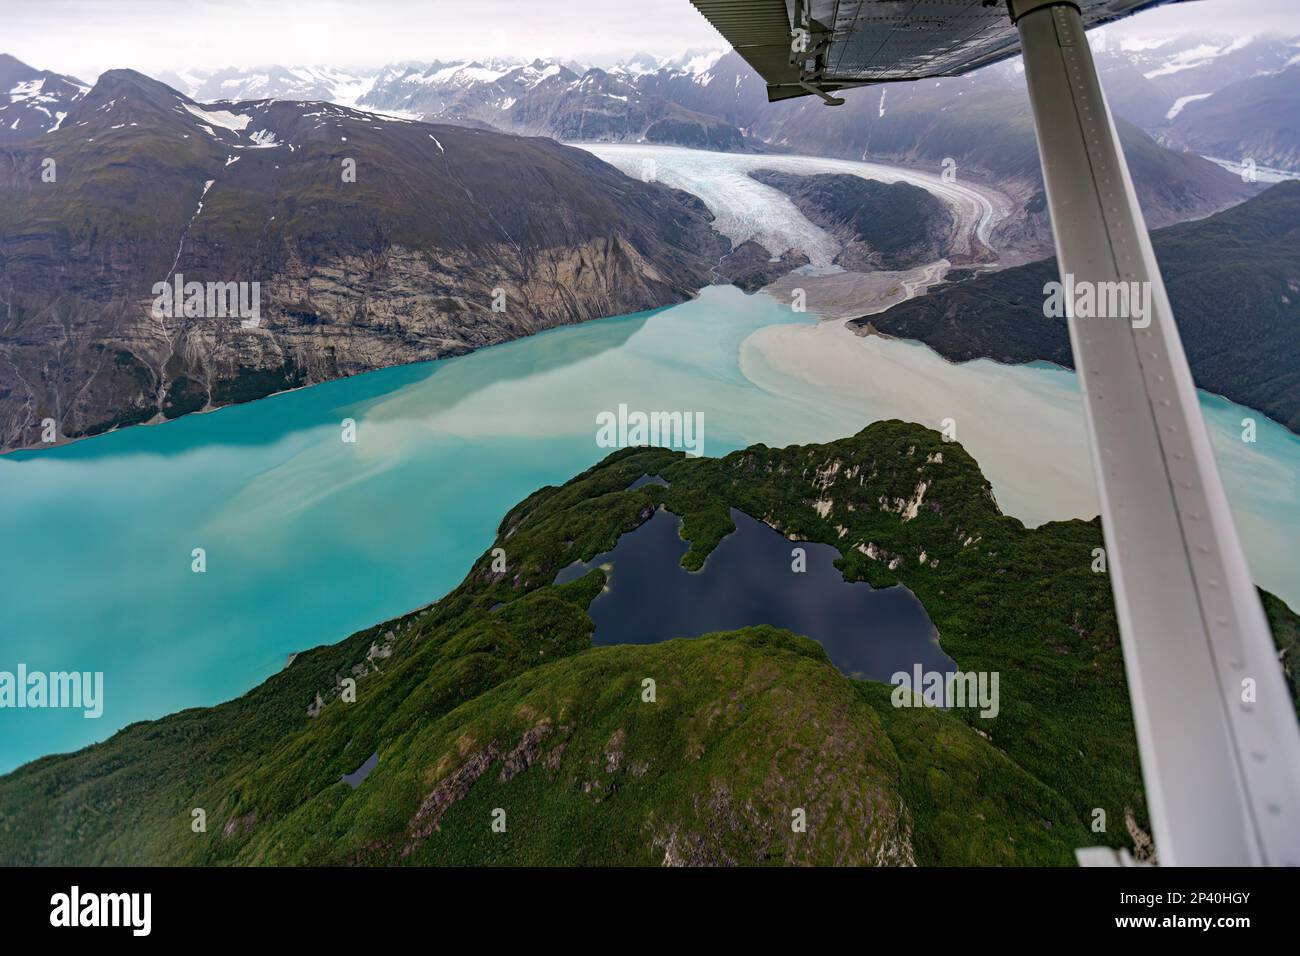 Vol au départ de Haines au-dessus de la plage des conditions météorologiques équitables dans le parc national de Glacier Bay, dans le sud-est de l'Alaska, aux États-Unis. Banque D'Images